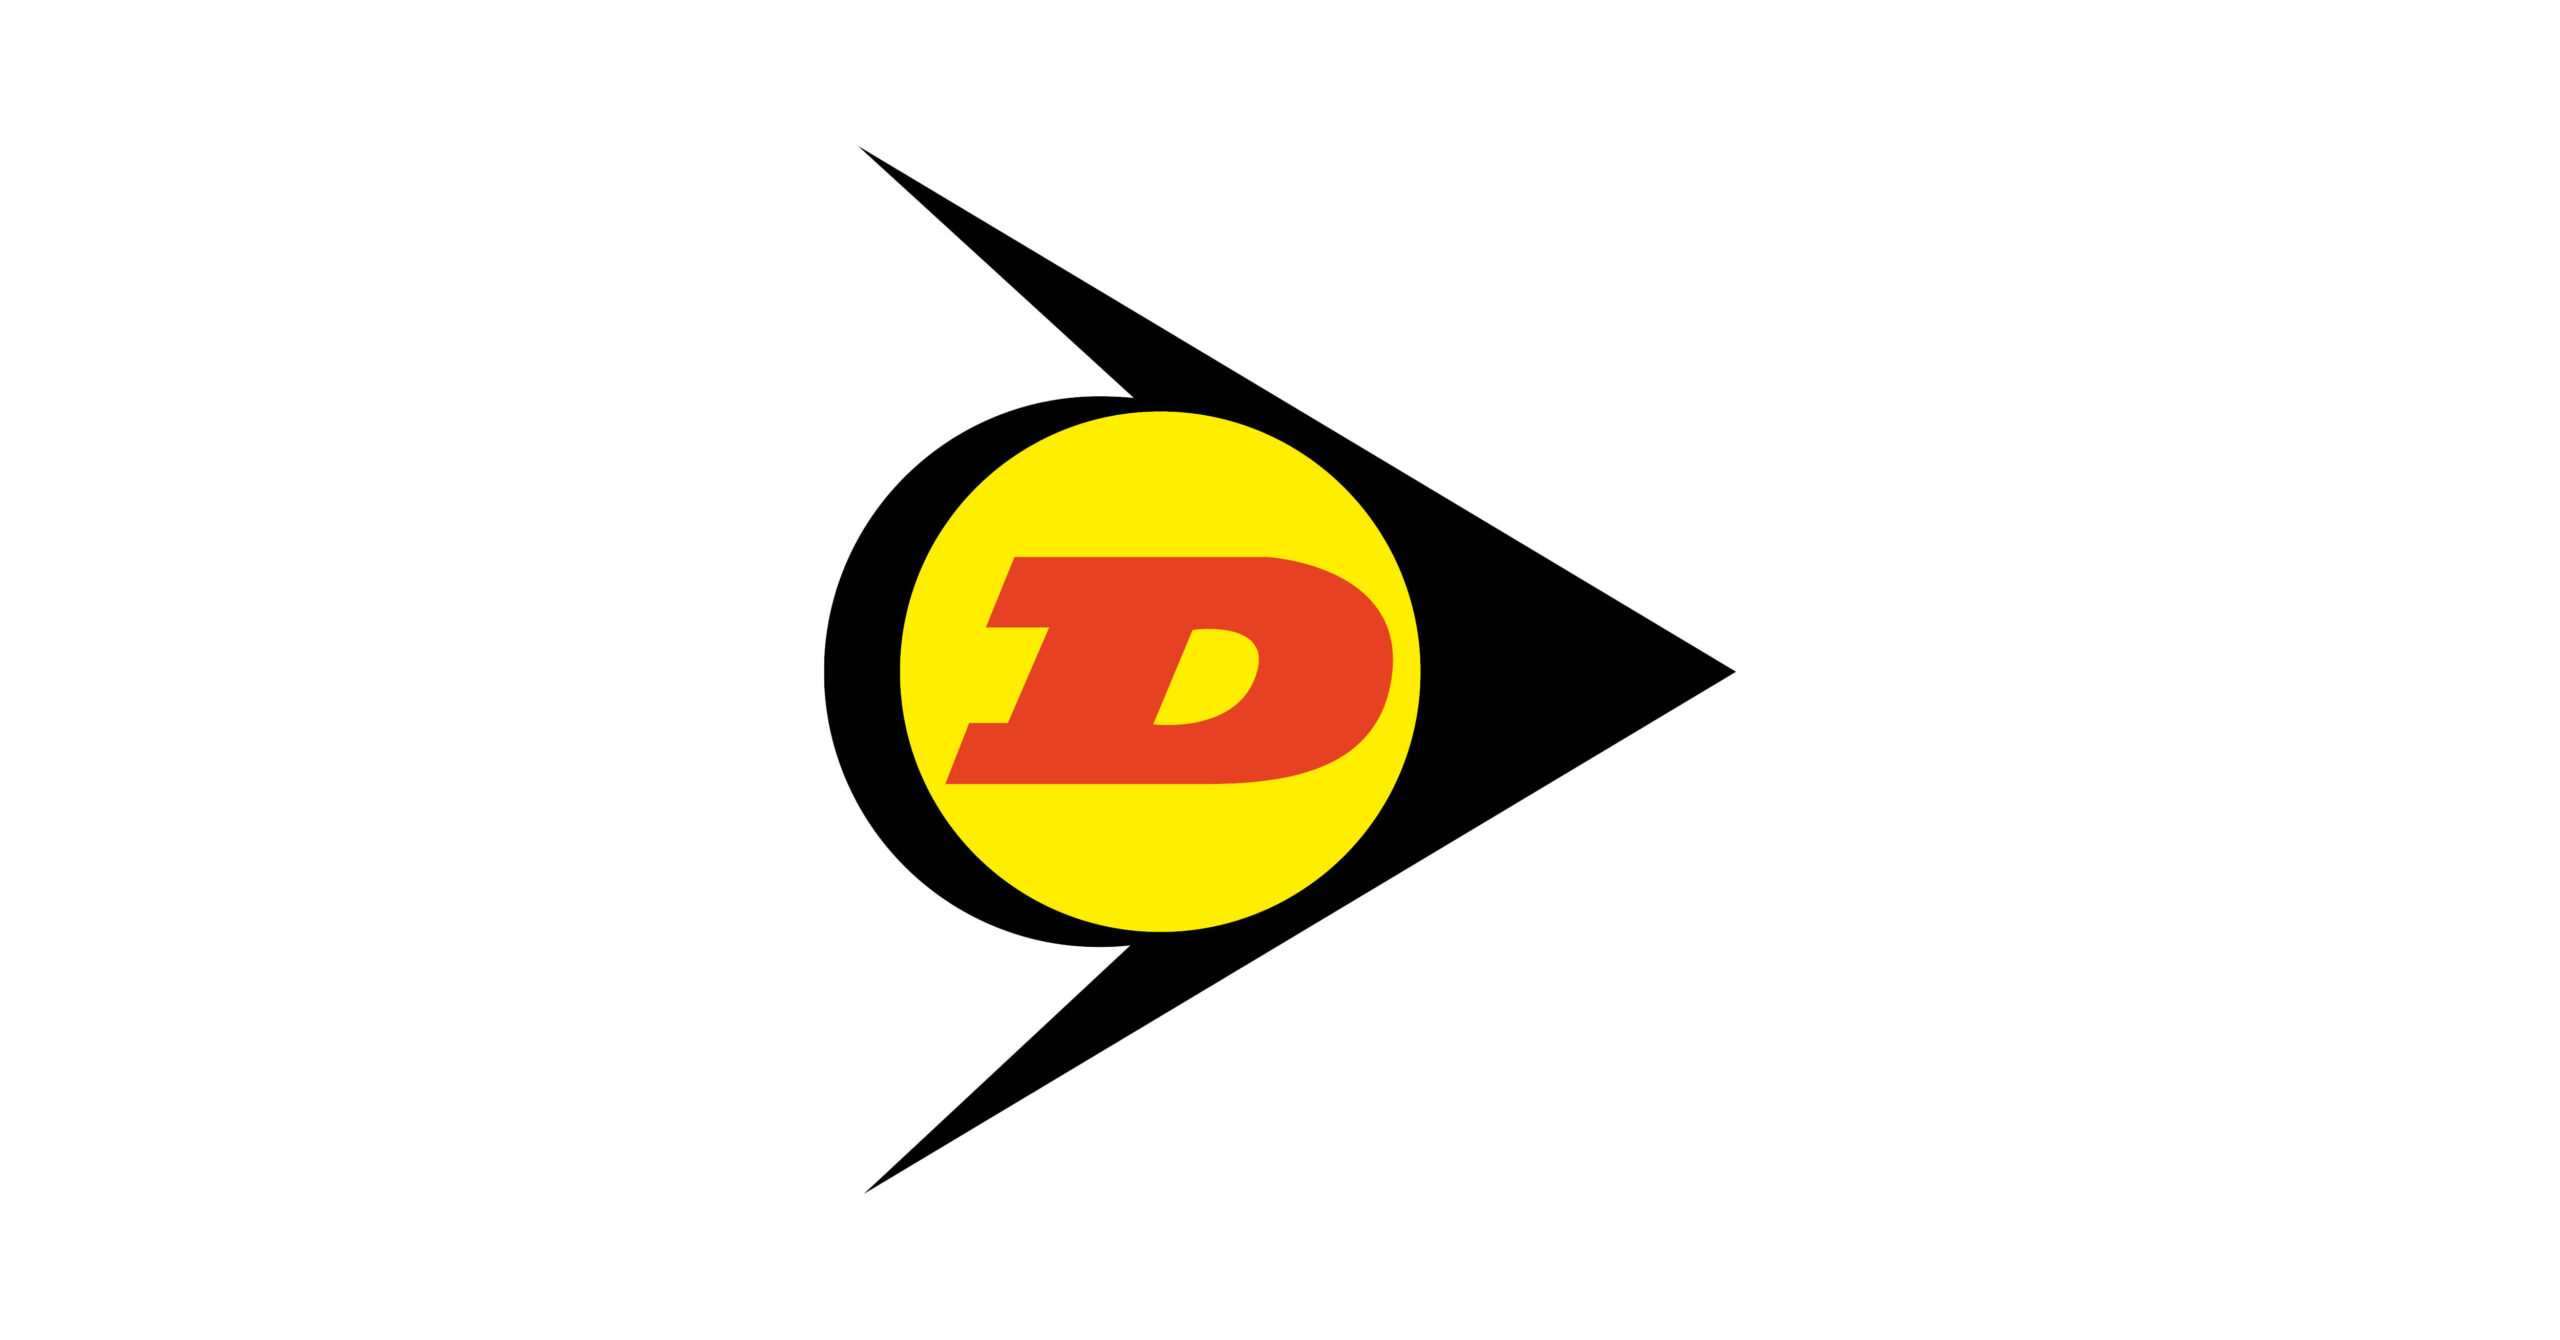 Organization change Dunlop Hiflex Denmark